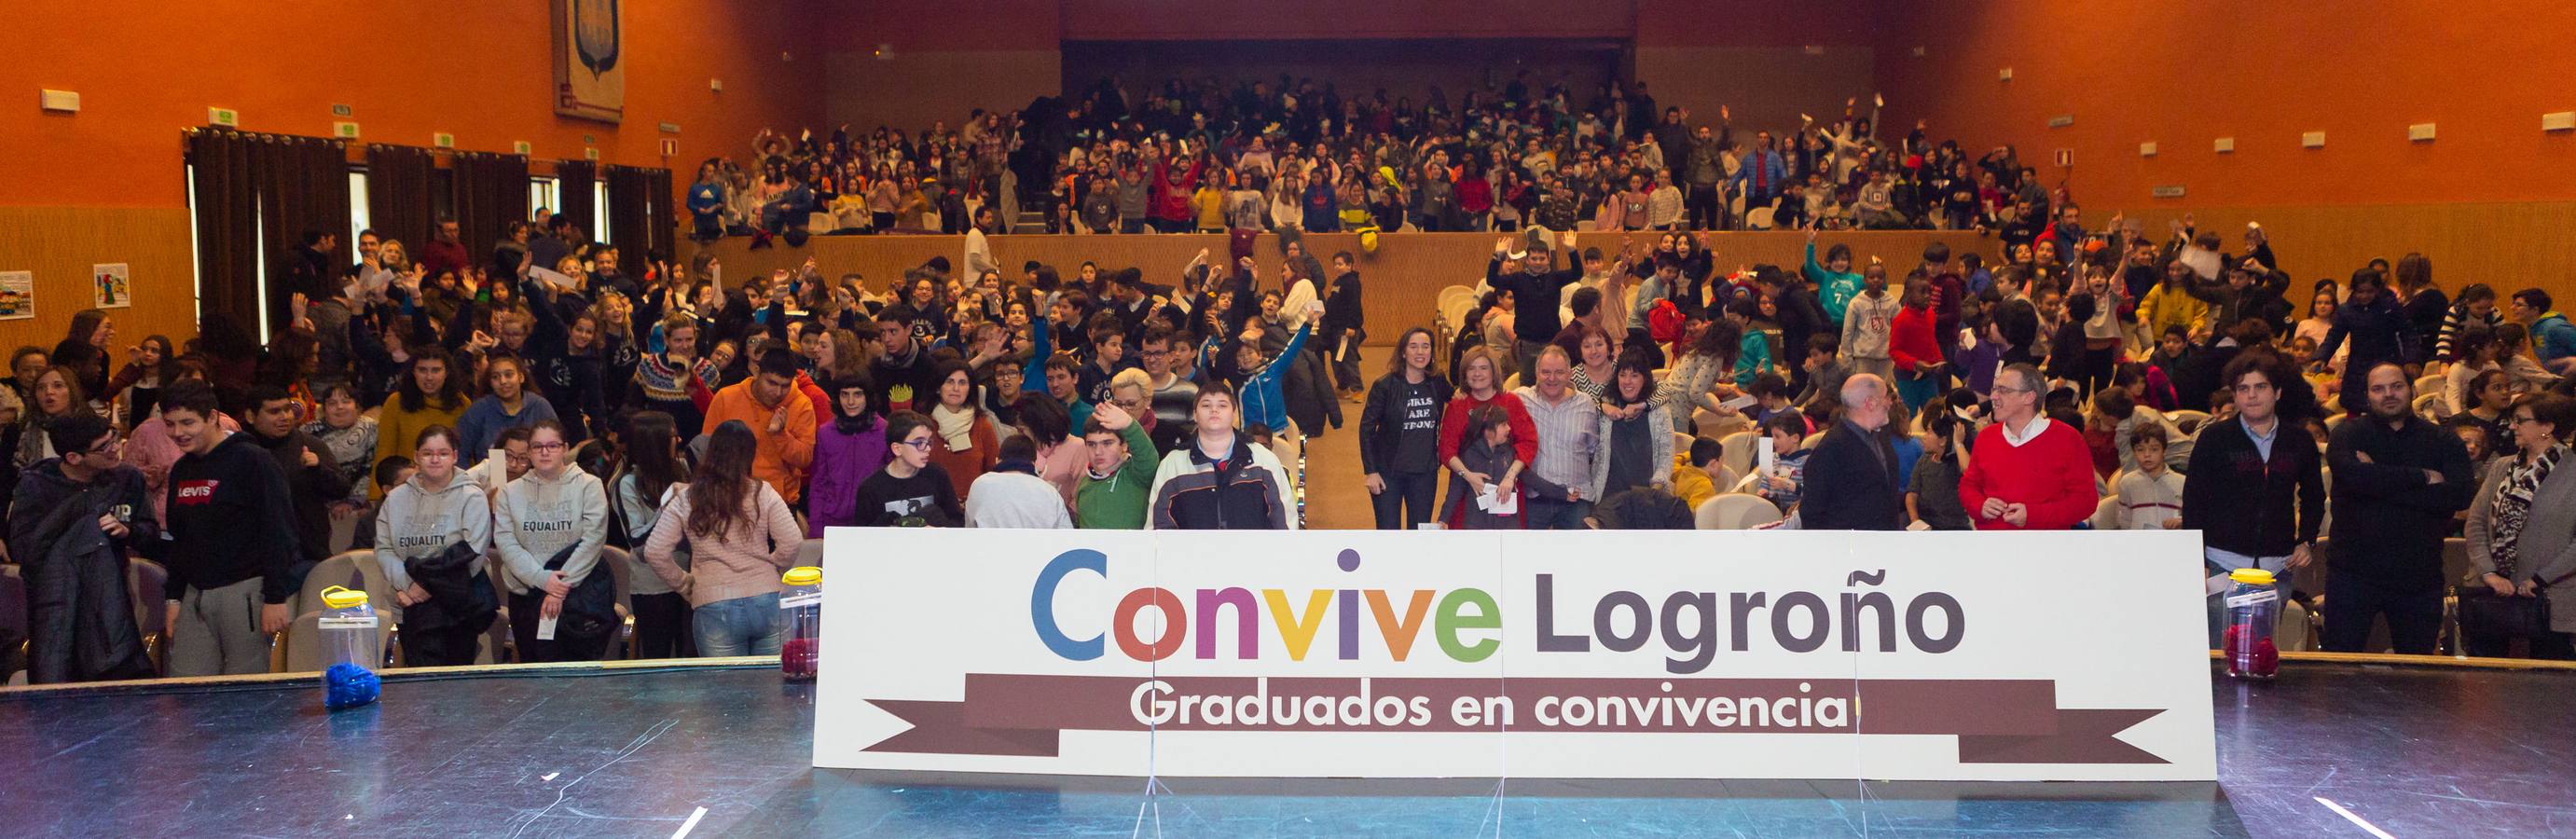 El Consistorio Logroñés ha celebrado este acto con otros centros participantes en el proyecto, una iniciativa donde se sensibiliza contra los rumores, prejuicios y estereotipos que perjudican la convivencia